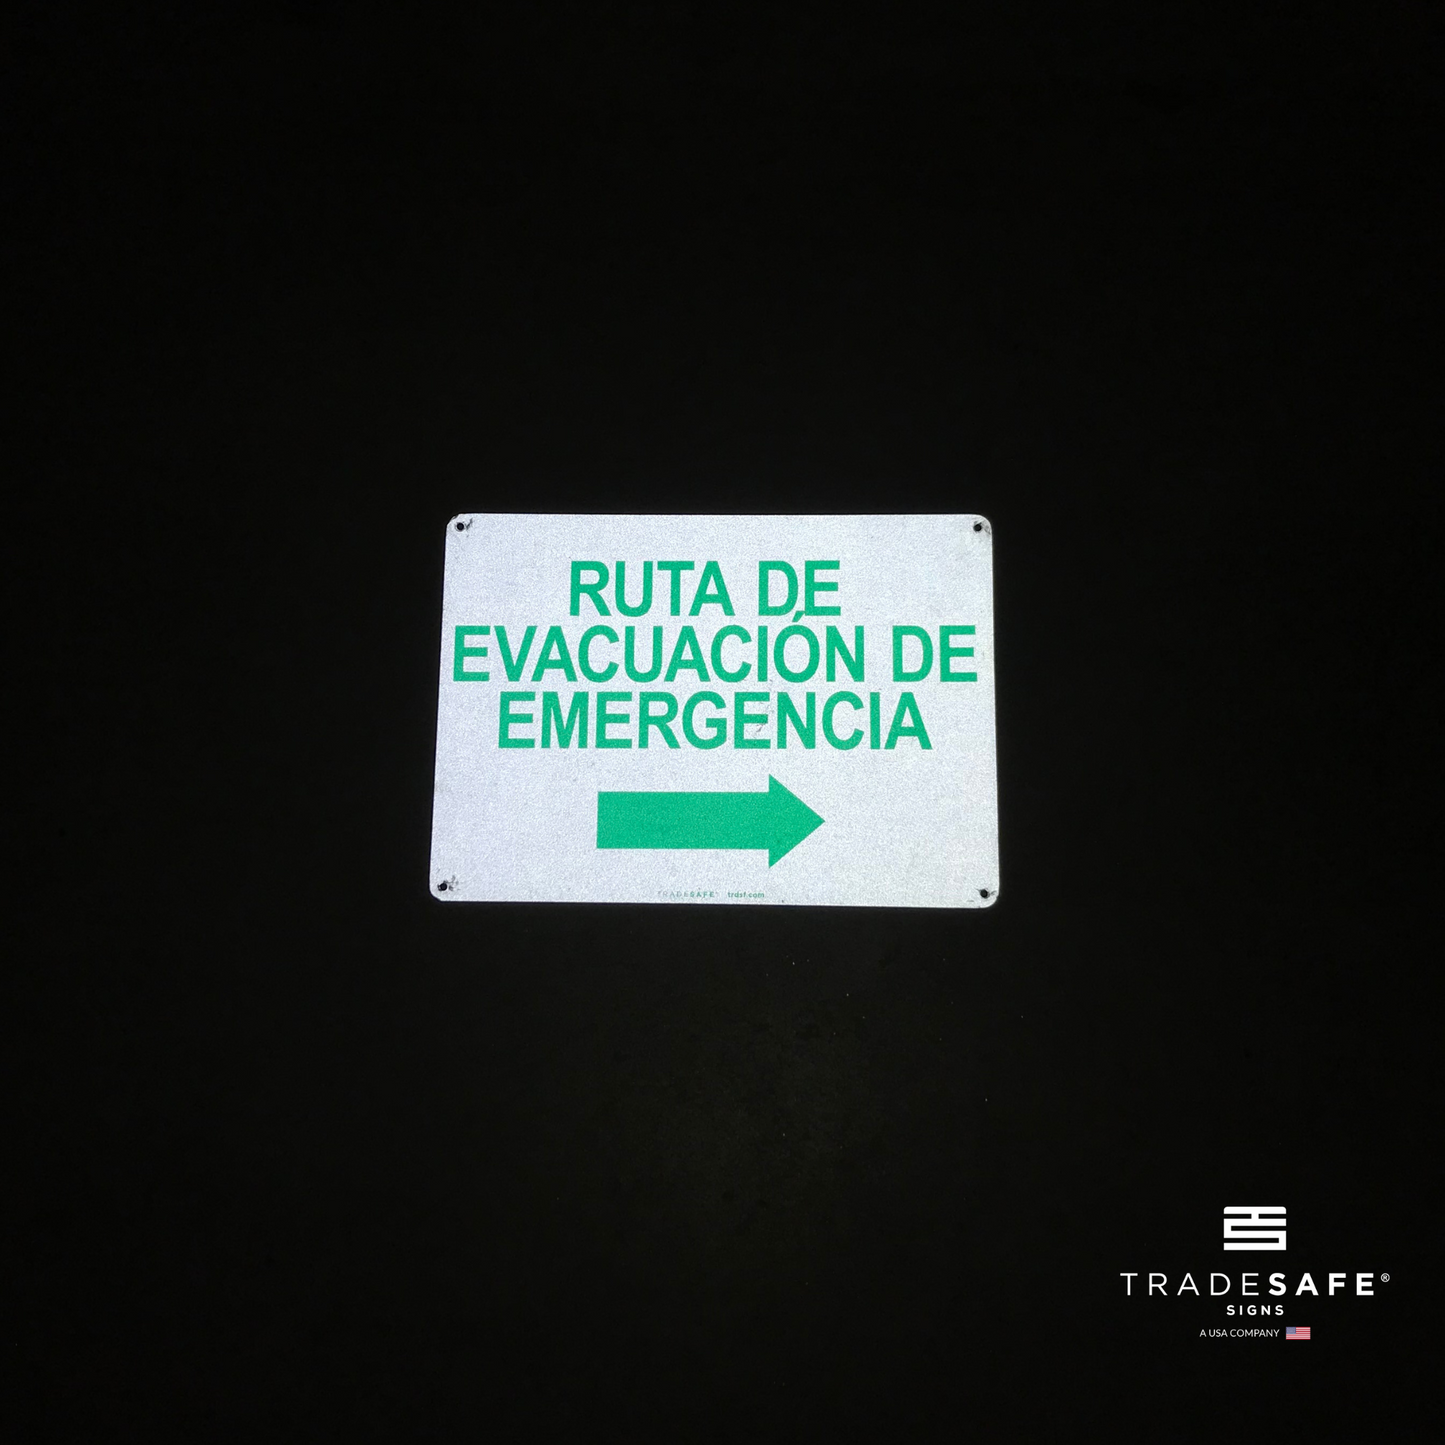 reflective attribute of "ruta de evacuación de emergencia" sign